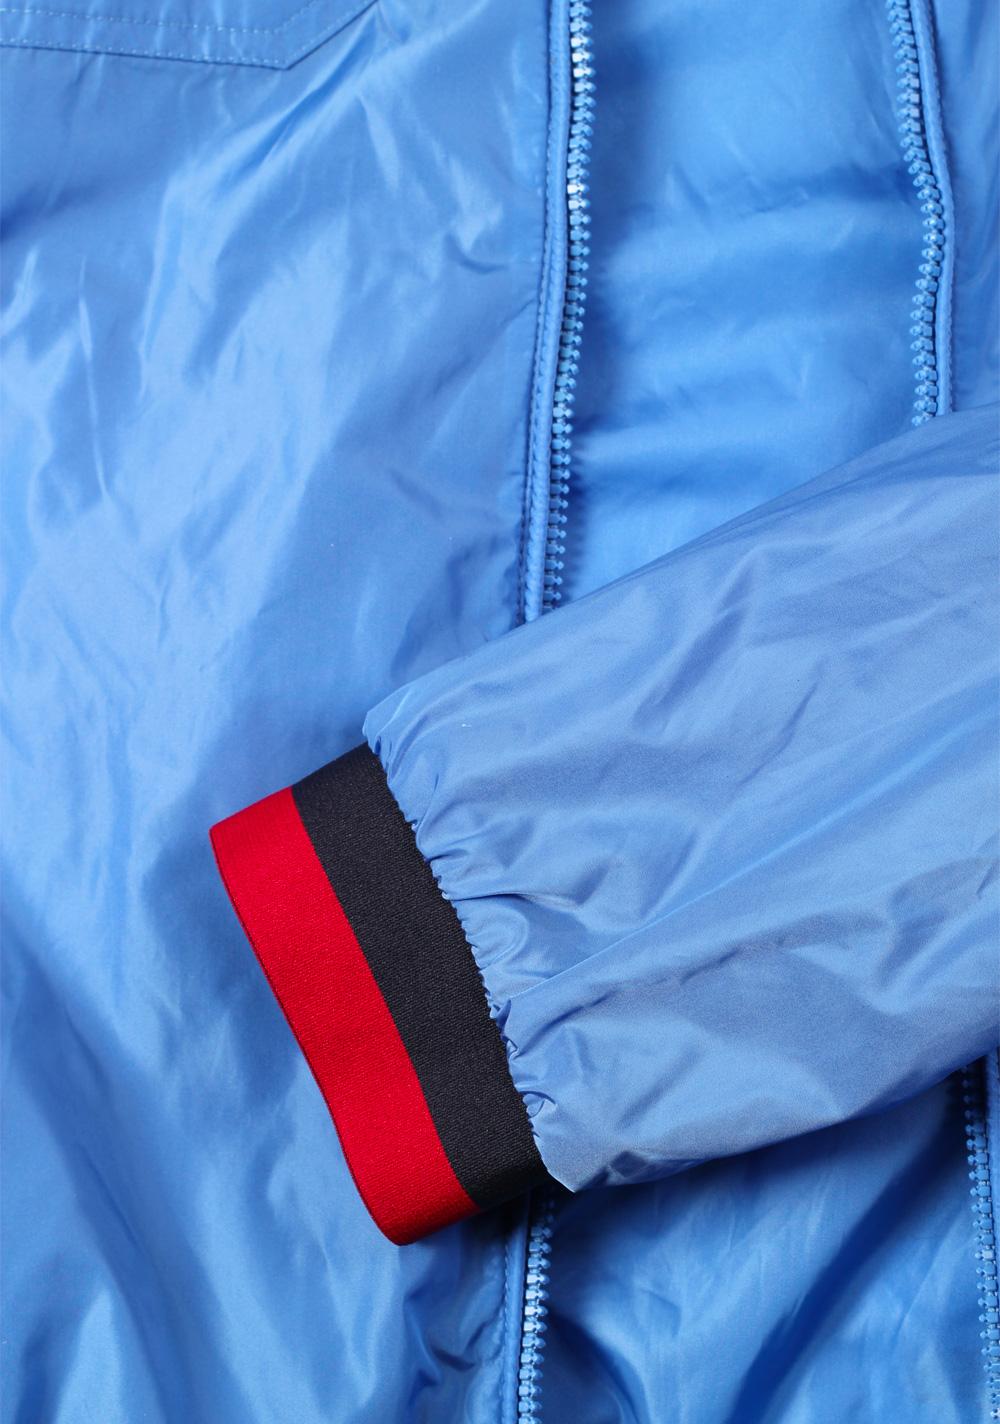 Moncler Blue Atlin Jacket Coat Size 5 / XL / 54 / 44 U.S. | Costume Limité